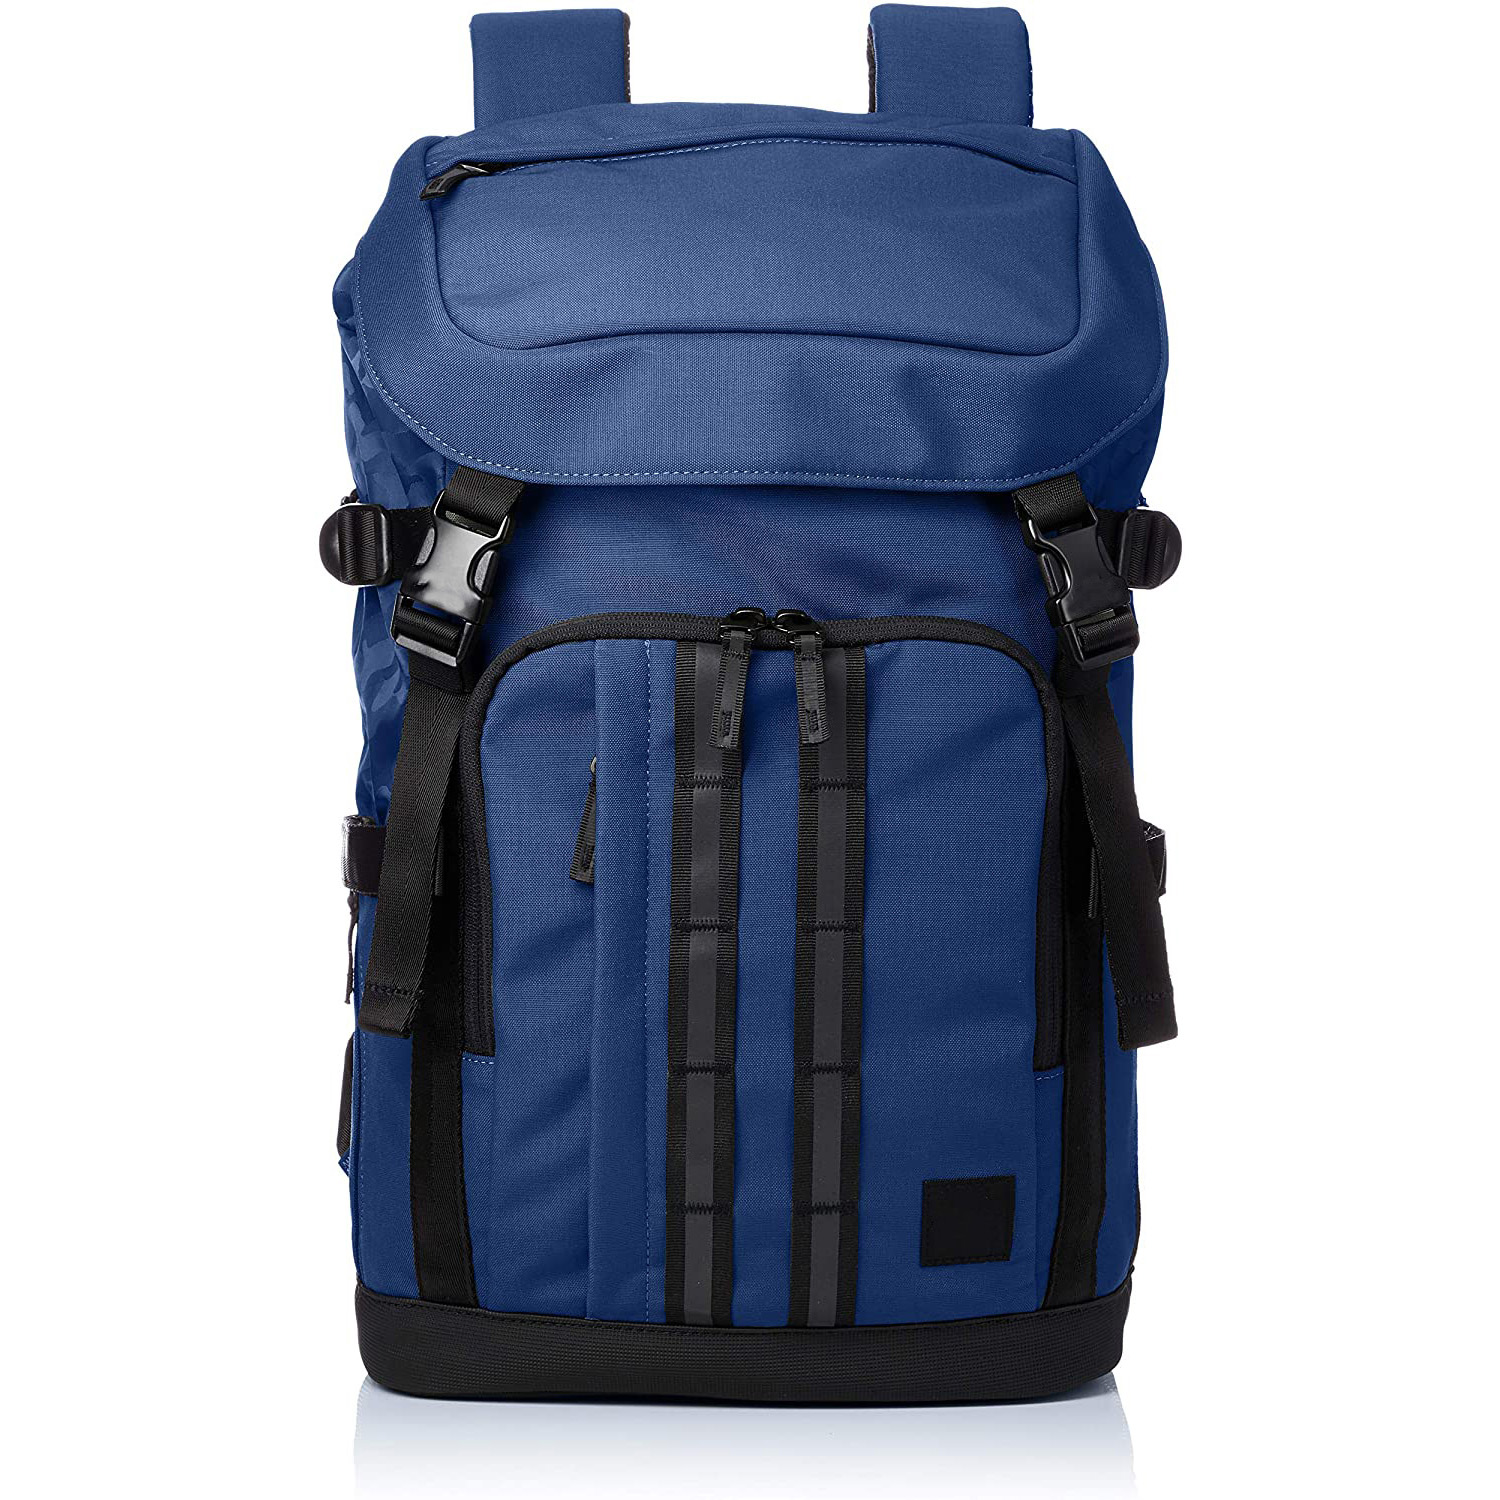 Manufacturer from China OEM&ODM service sports gym drawstring backpack sports laptop backpack bag for men